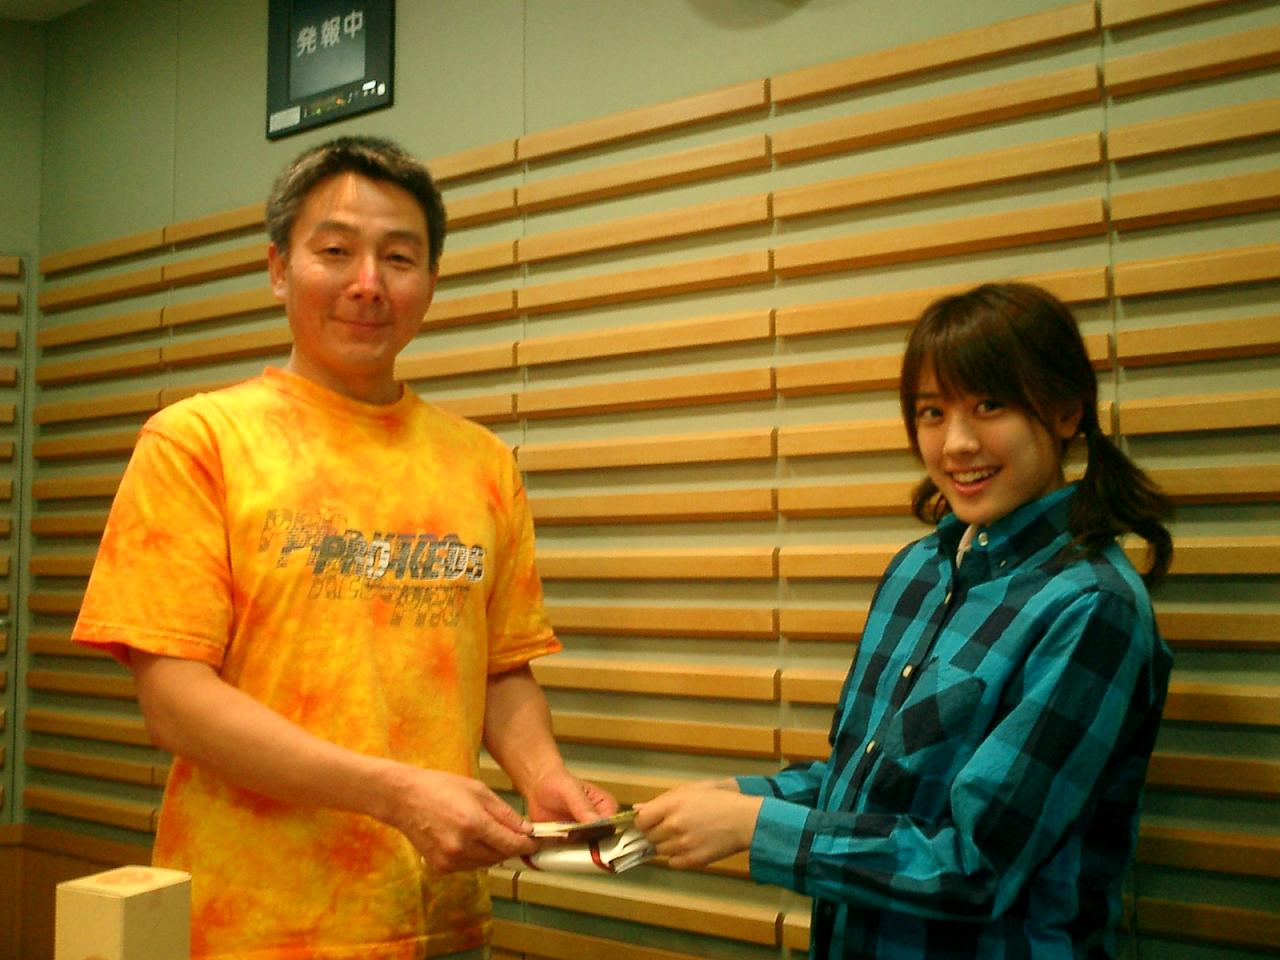 ６月２１日に４５歳の誕生日を迎えた柳田主任にバースデーカードを渡す沙紀ちゃん。柳田主任、お誕生日おめでとうございます！